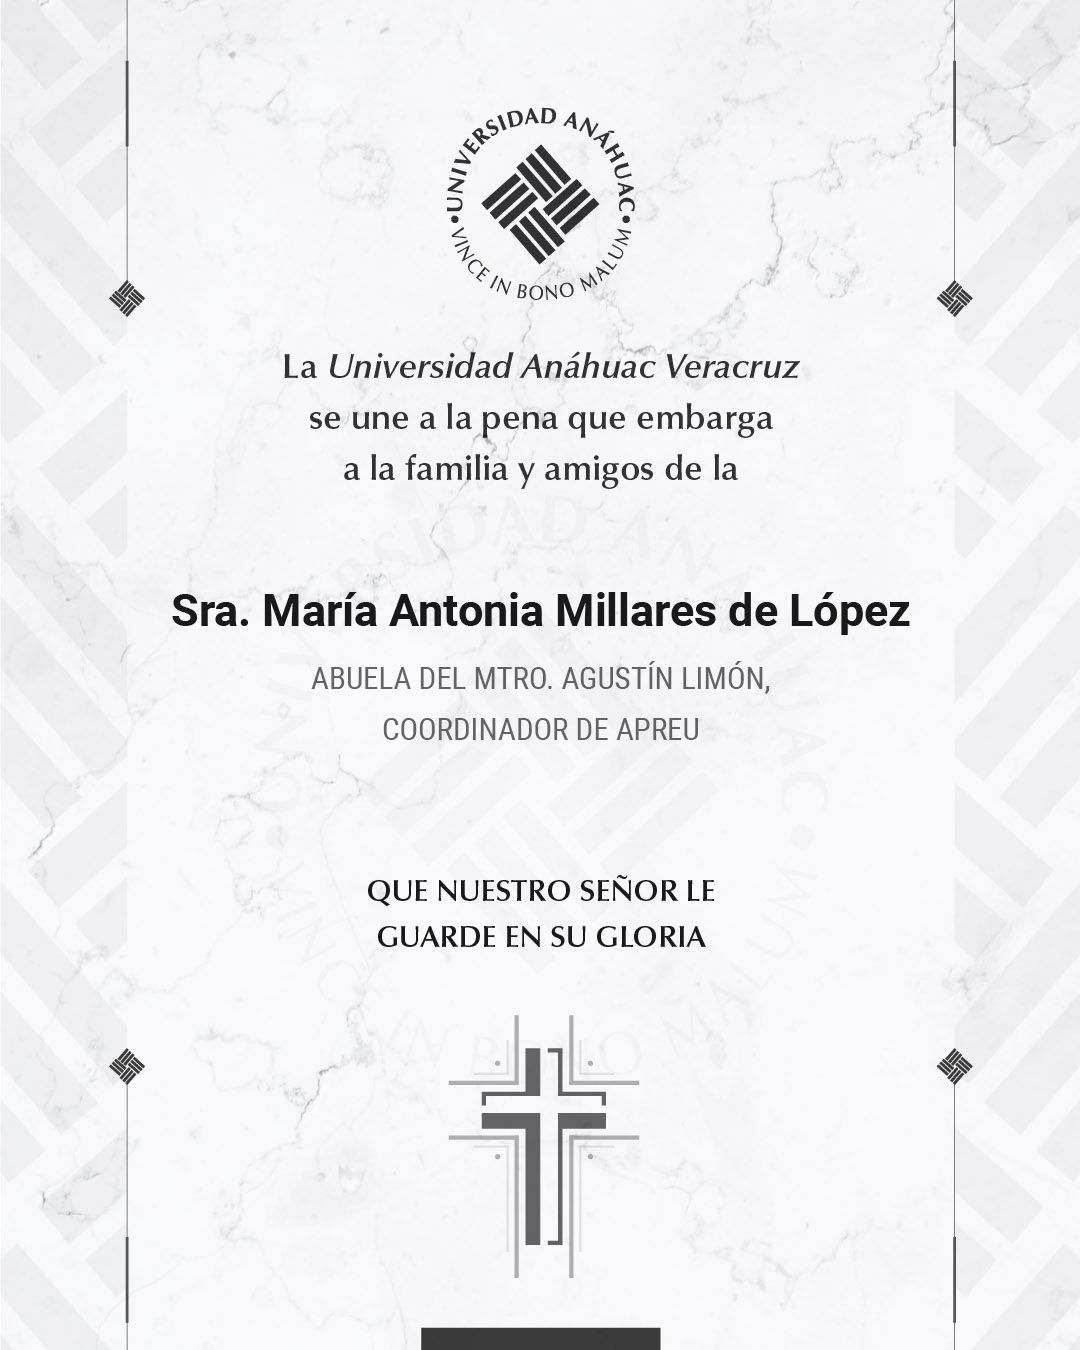 5 / 10 - Sra. María Antonia Millares de López